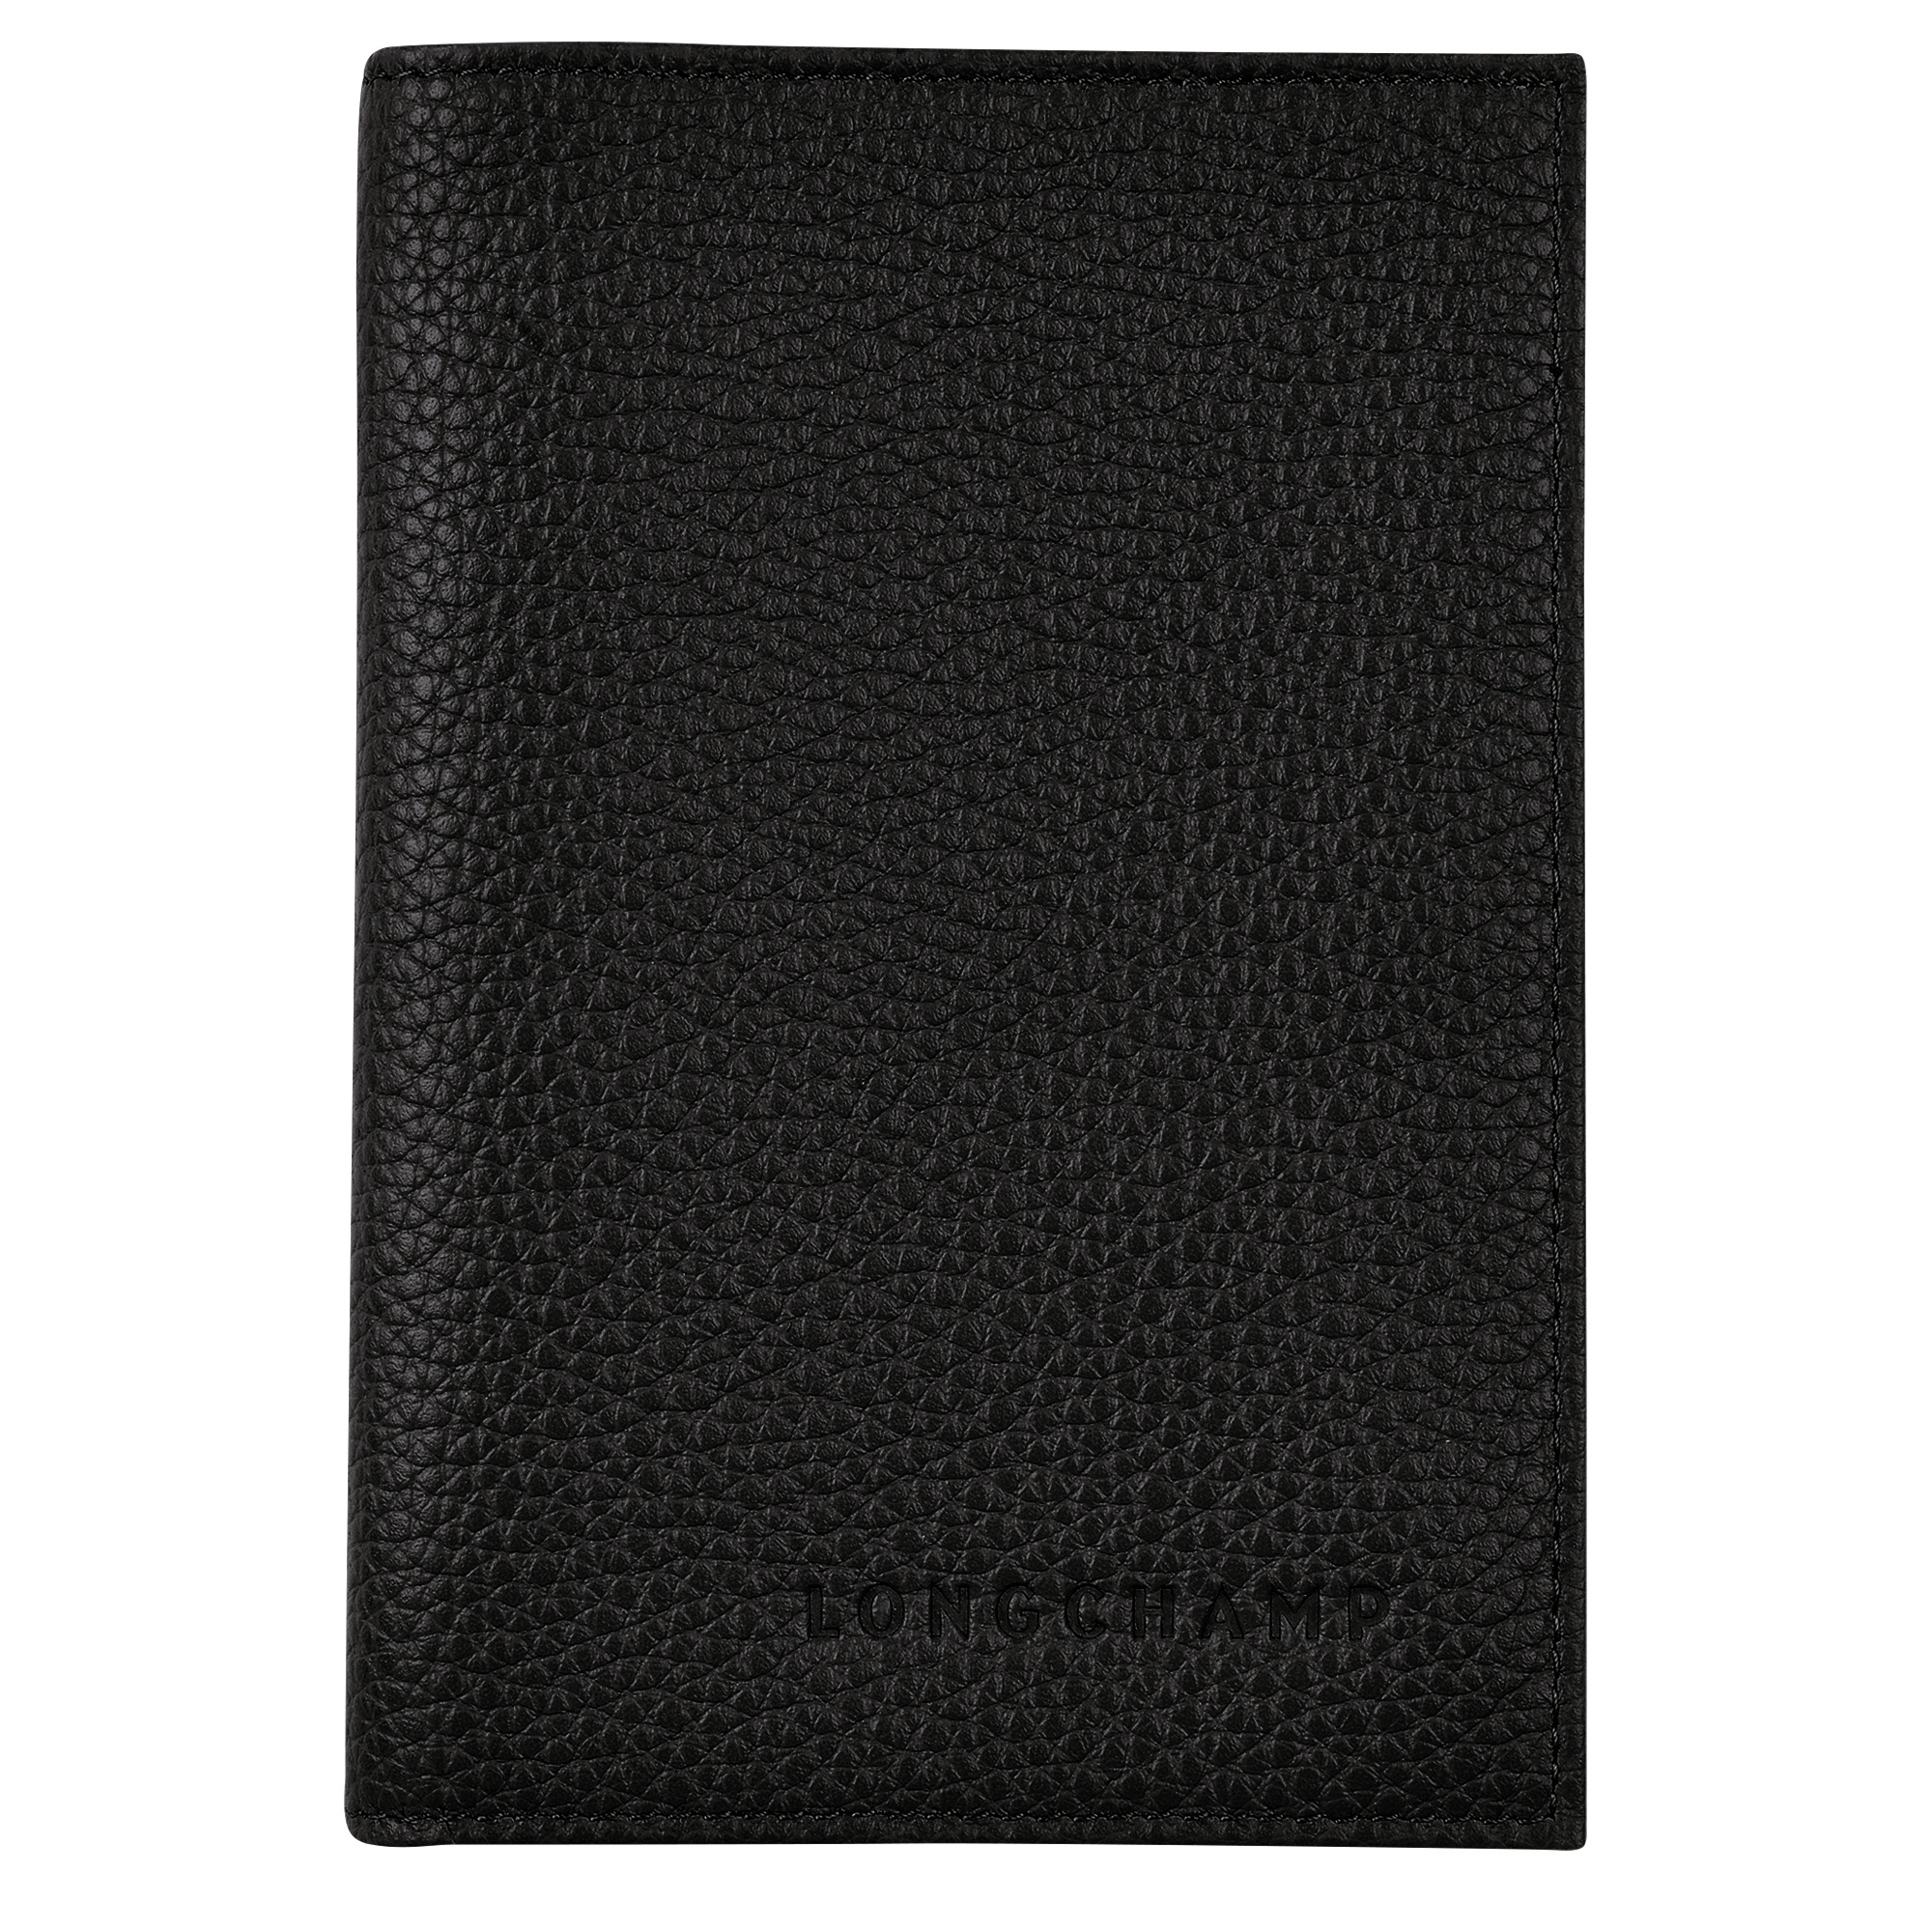 Le Foulonné Passport cover Black - Leather - 1